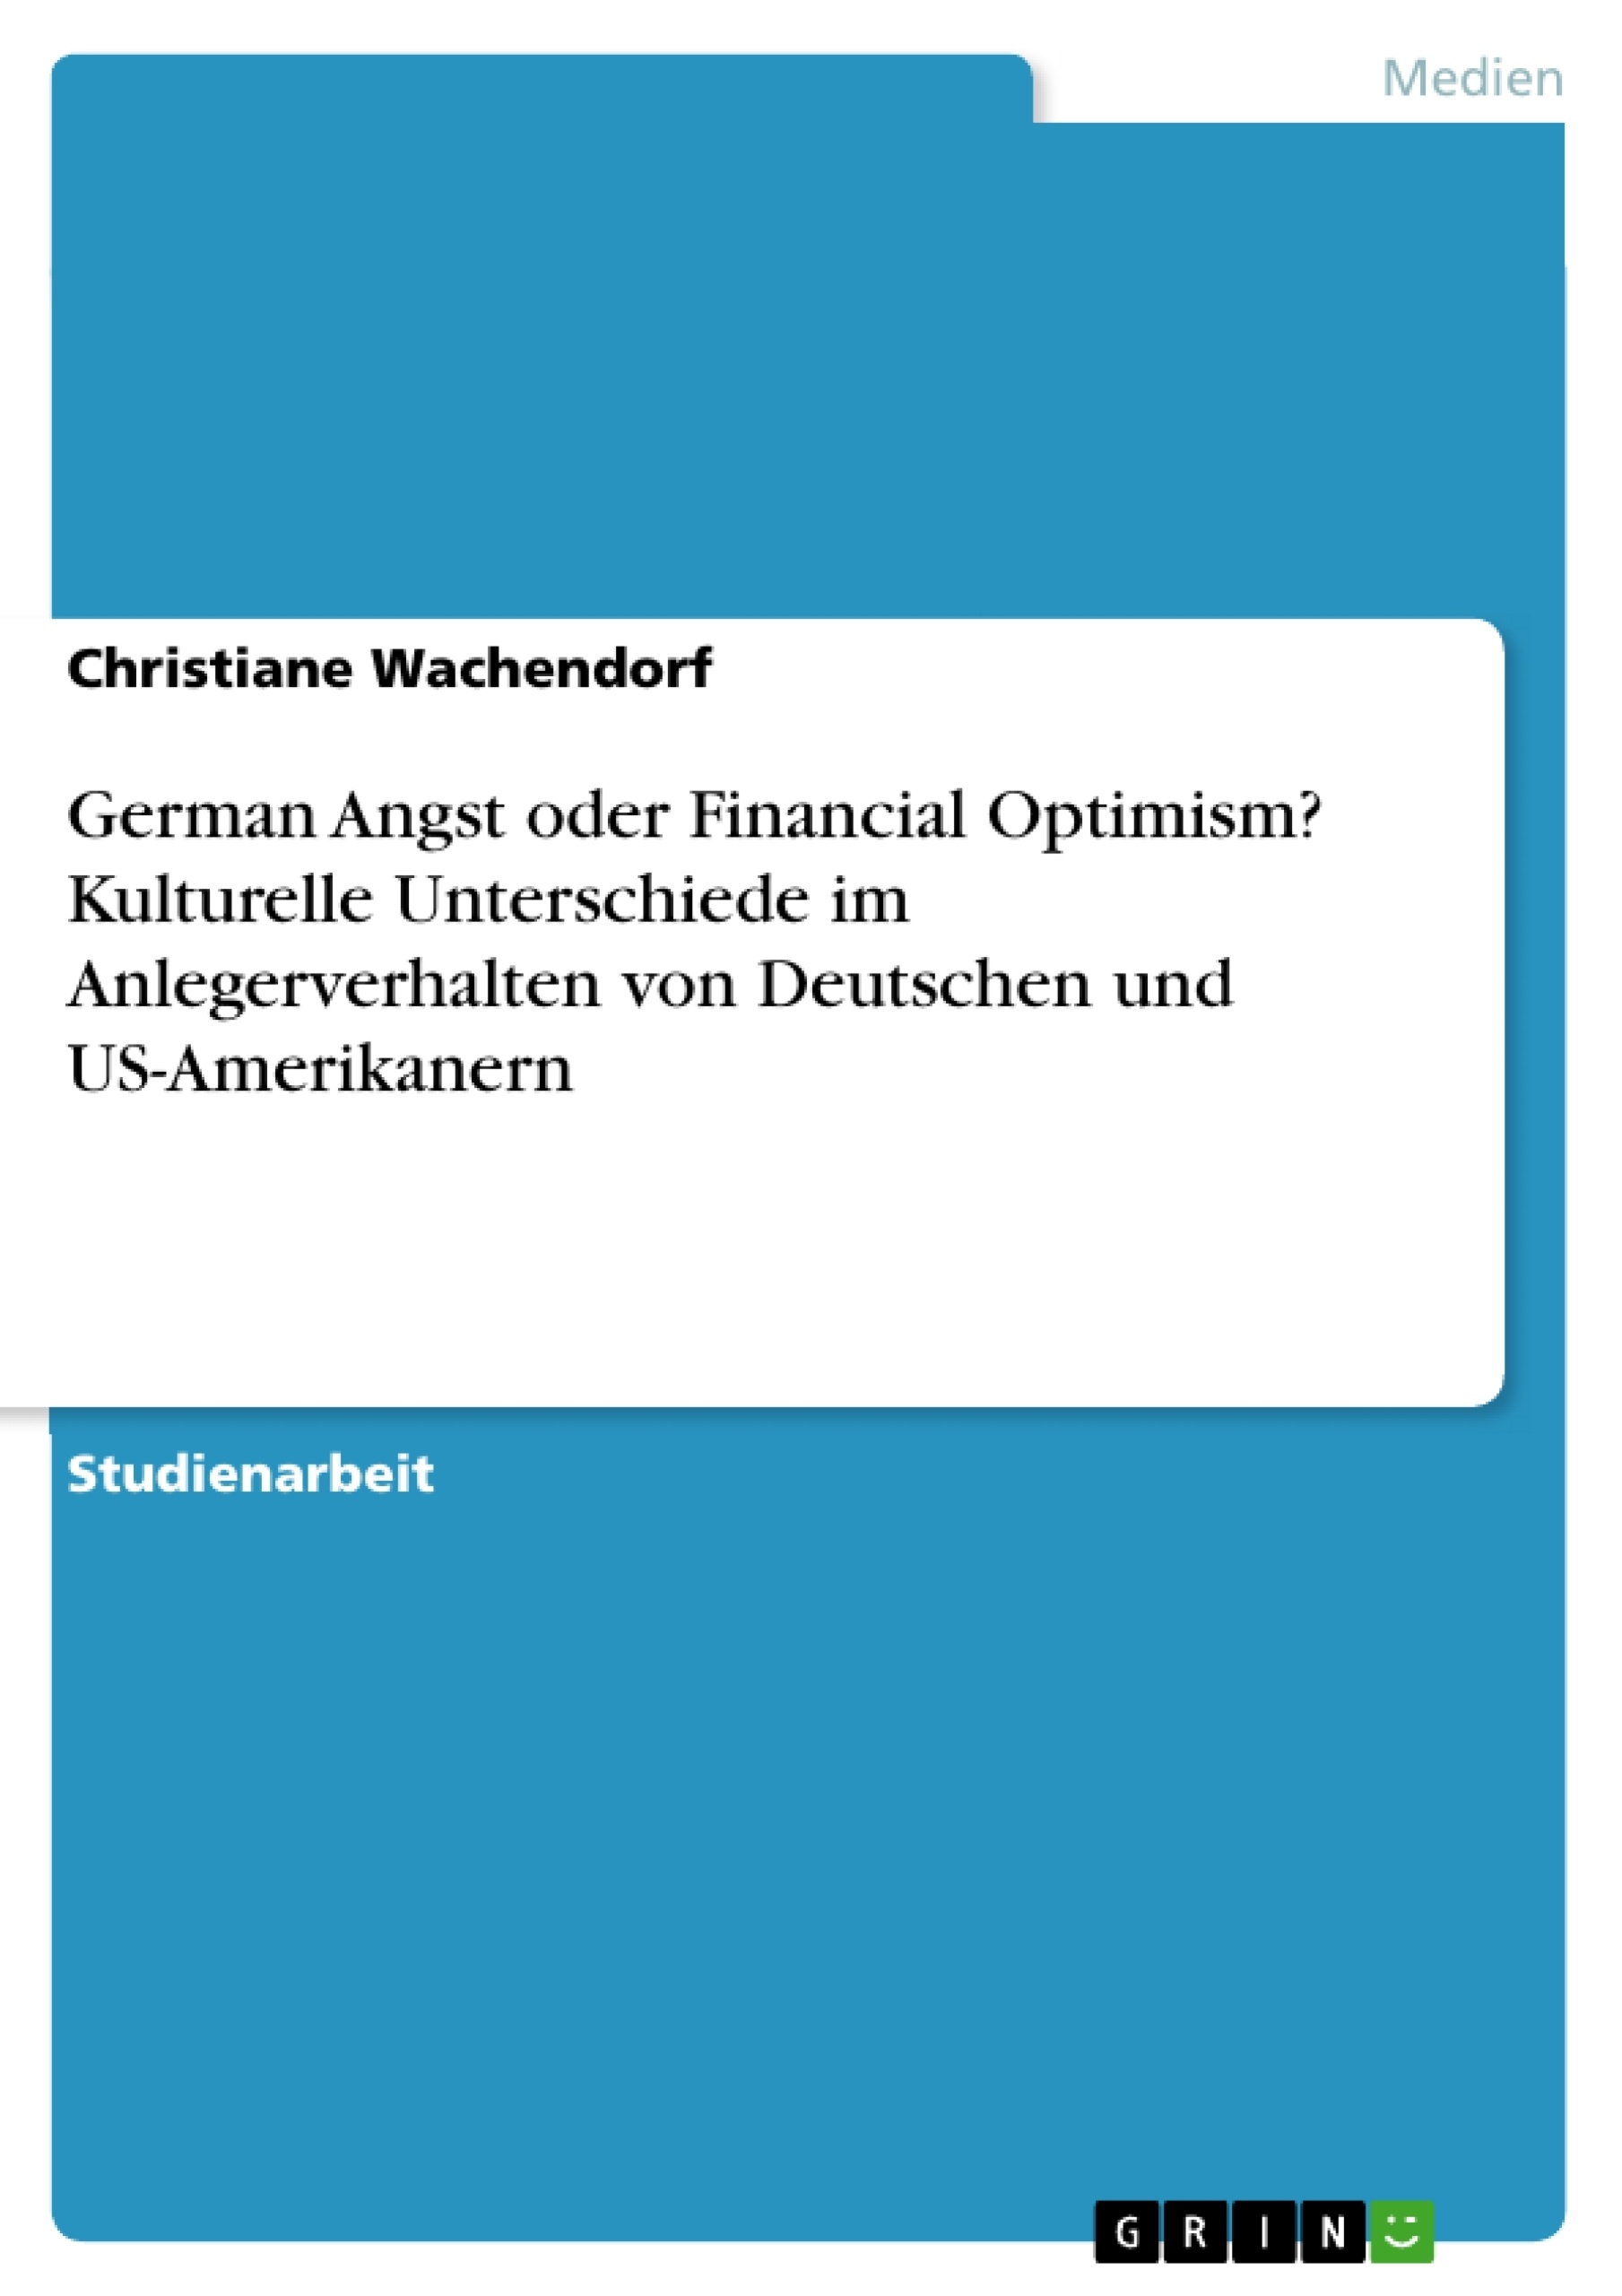 Title: German Angst oder Financial Optimism? Kulturelle Unterschiede im Anlegerverhalten von Deutschen und US-Amerikanern